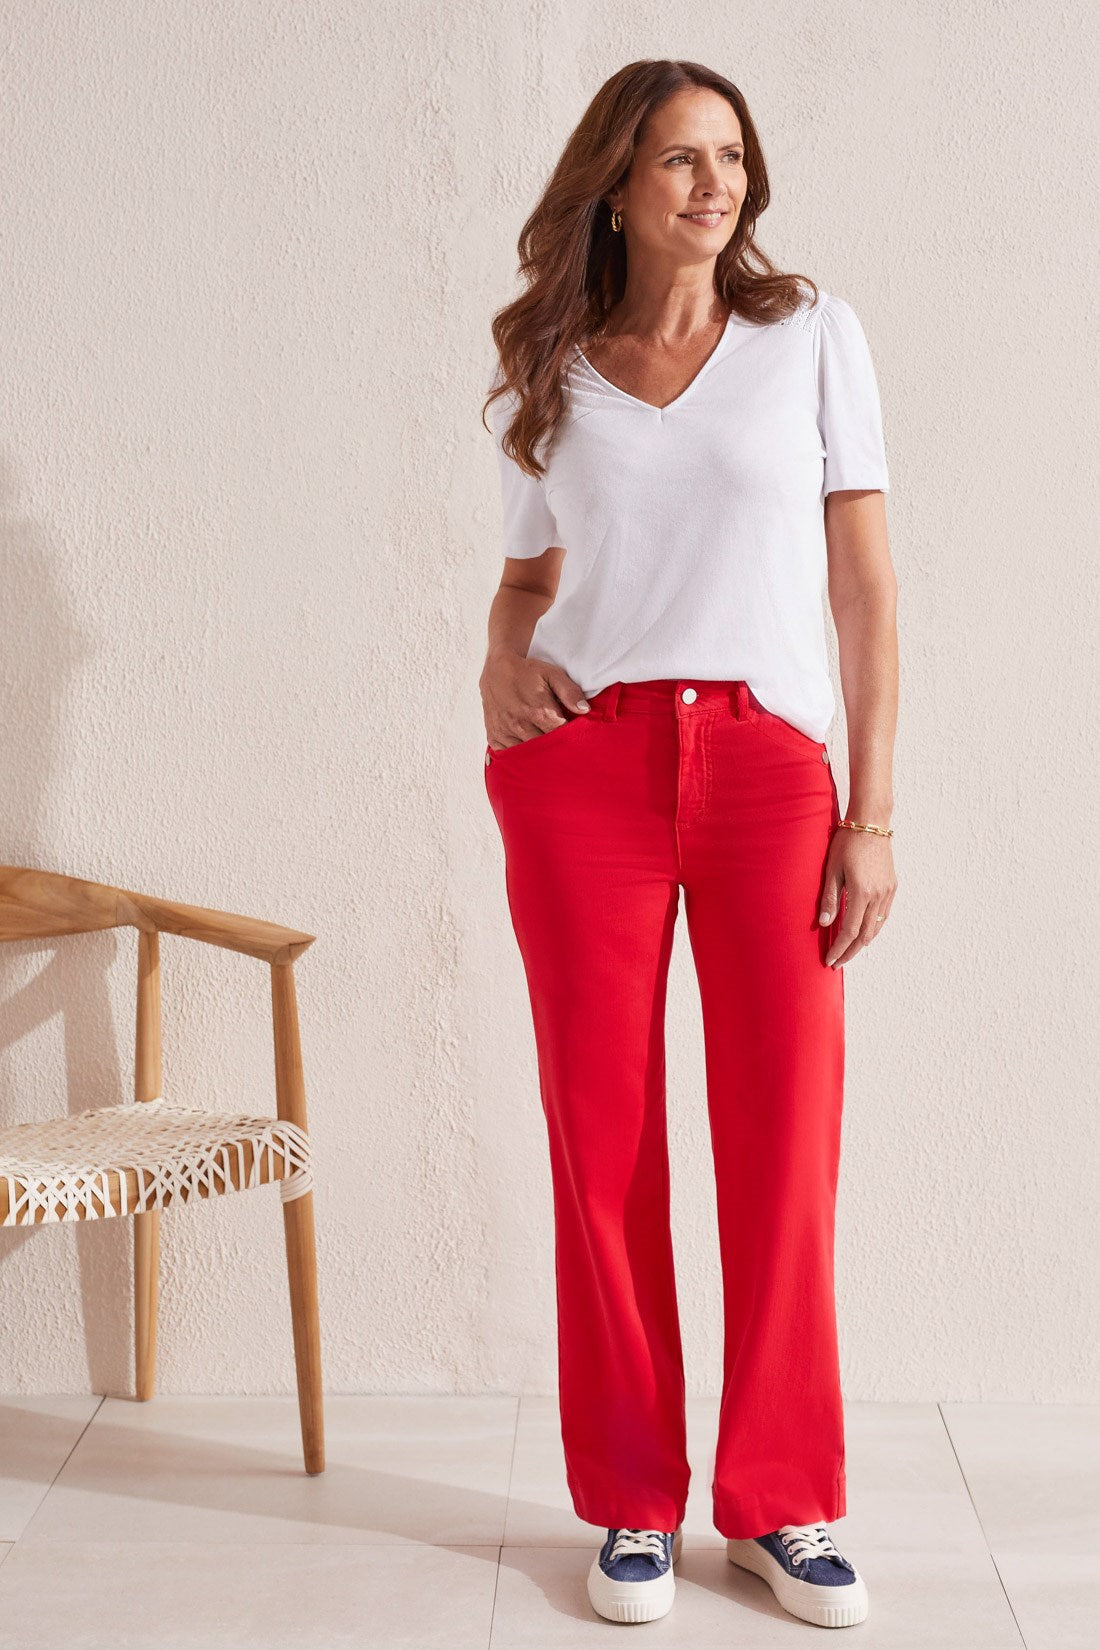 Celine Belted Wide Leg Pant - Red, Fashion Nova, Pants